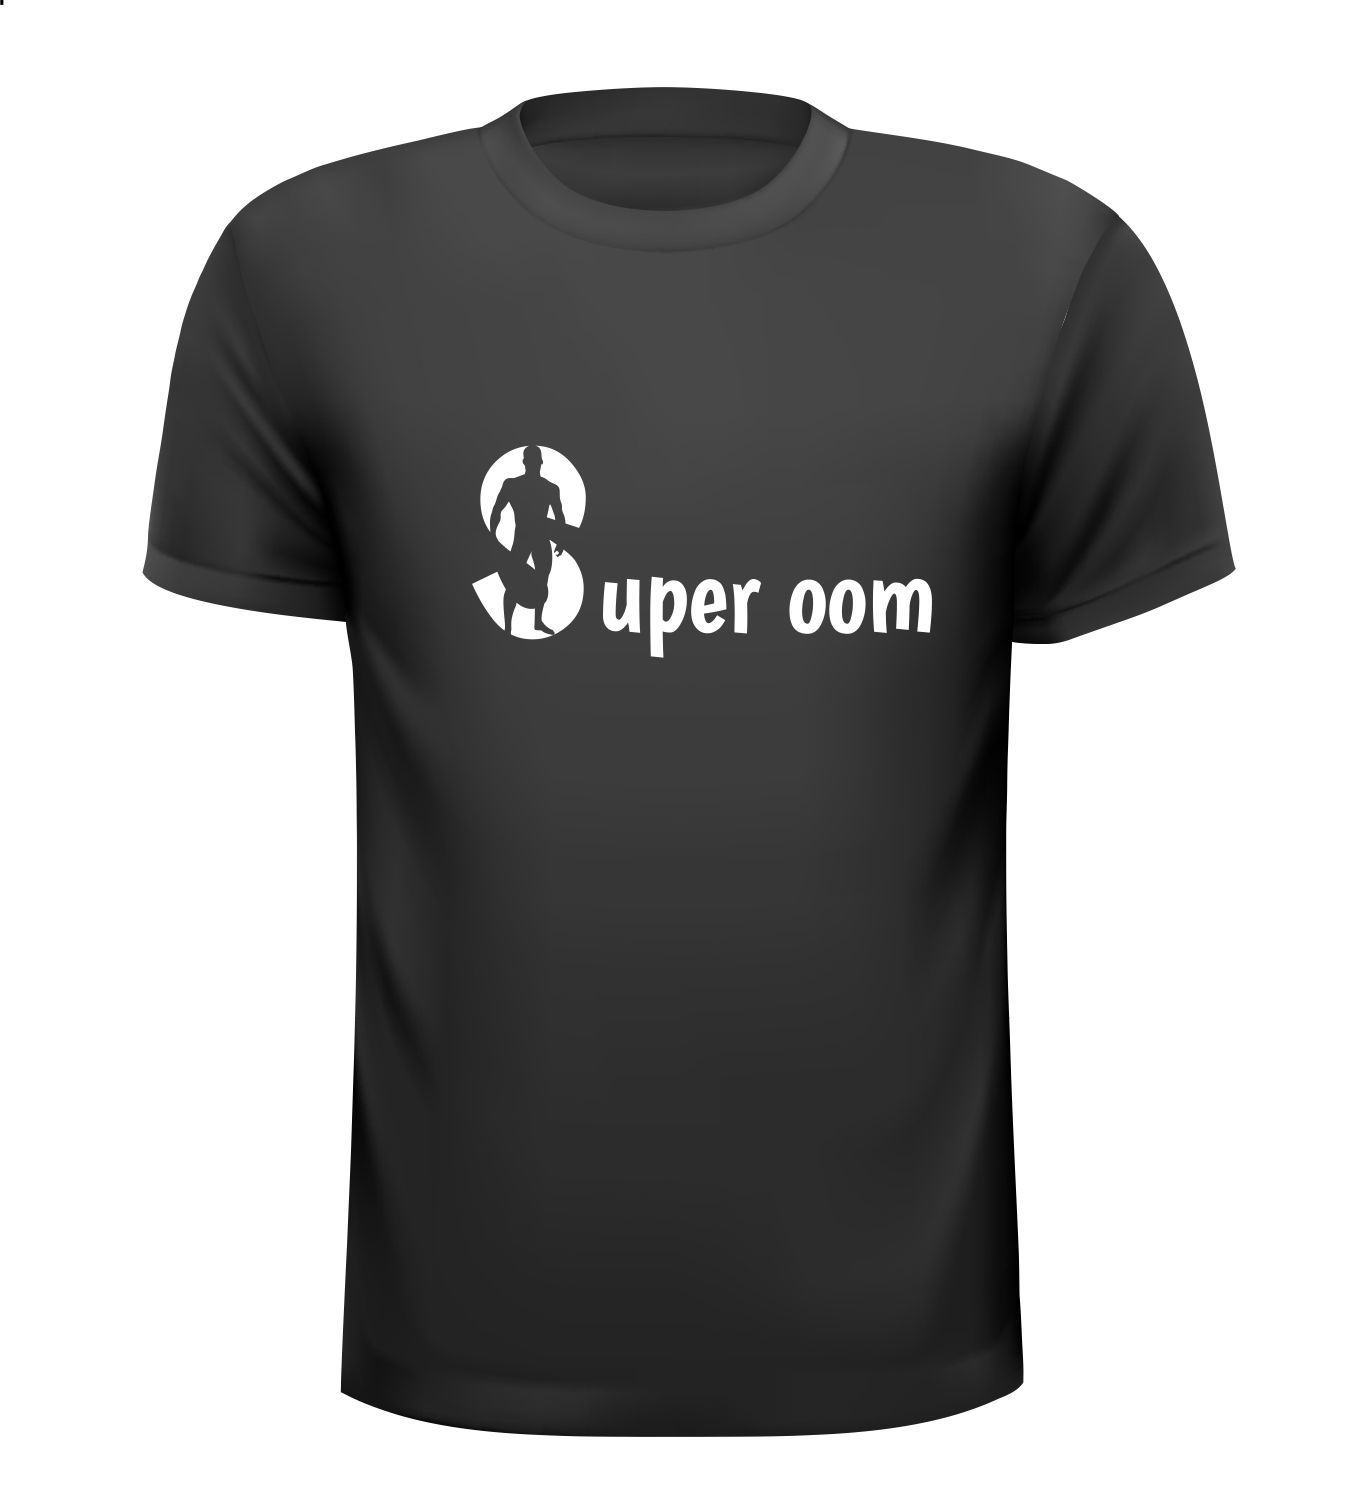 super oom T-shirt leuk om cadeau te geven aan jouw super oom